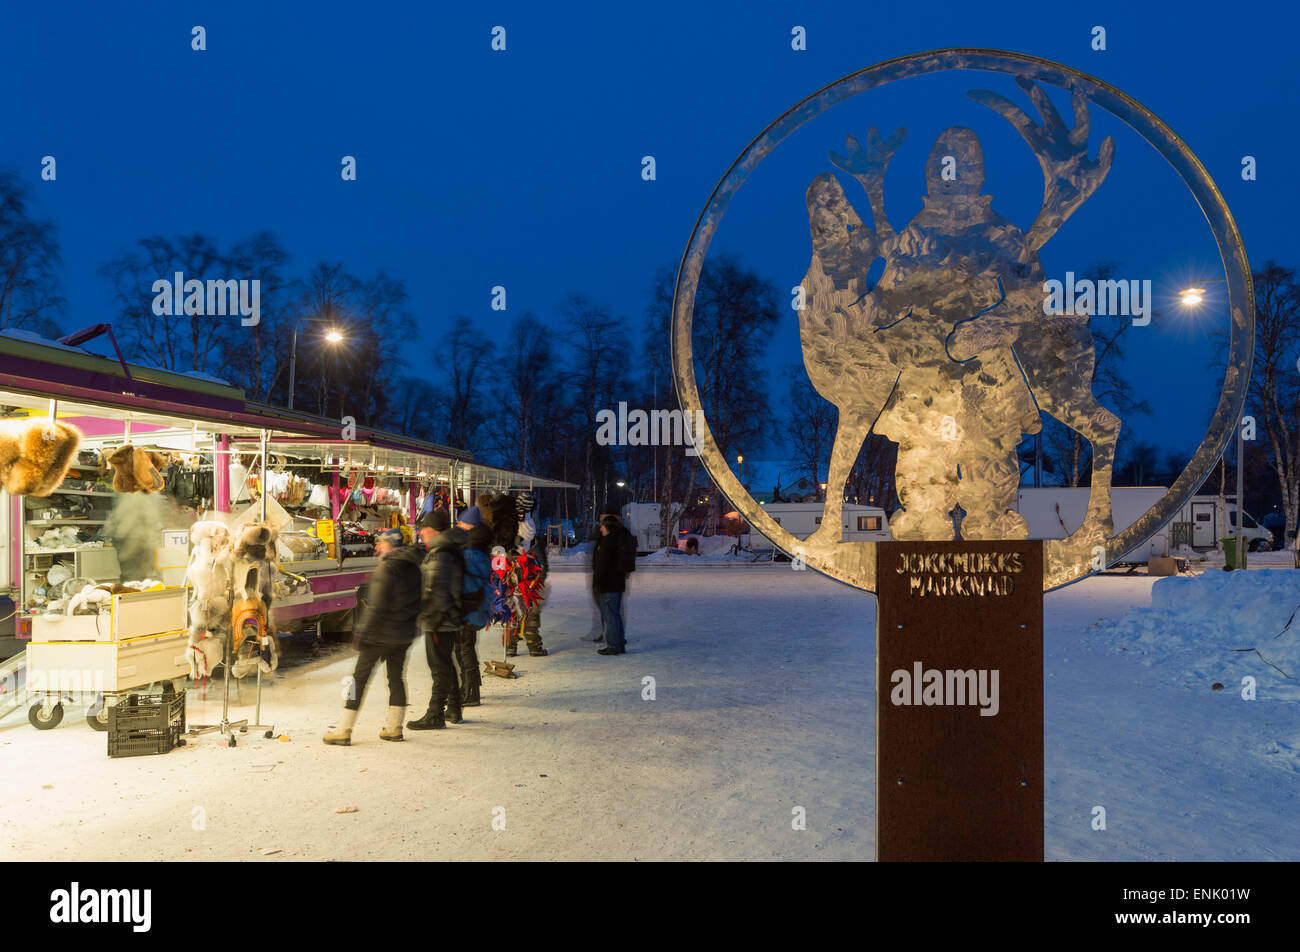 Mercato invernale, Jokkmokk, Lapponia, a nord del circolo polare artico, Svezia, Scandinavia, Europa Foto Stock